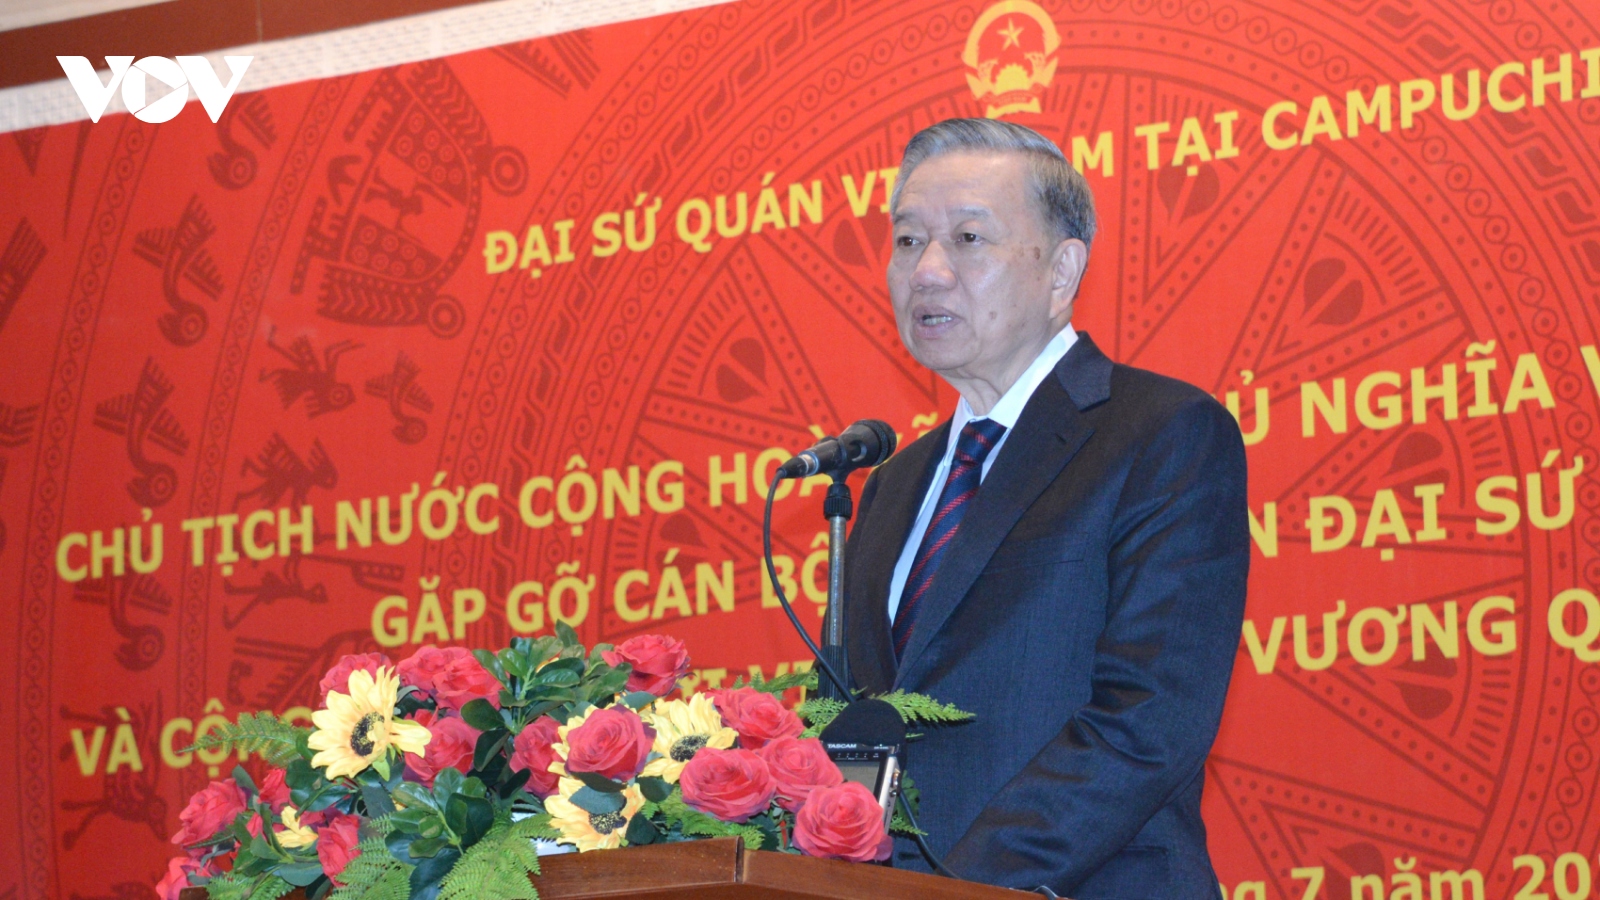 Chủ tịch nước thăm Đại sứ quán và gặp mặt cộng đồng người Việt tại Campuchia